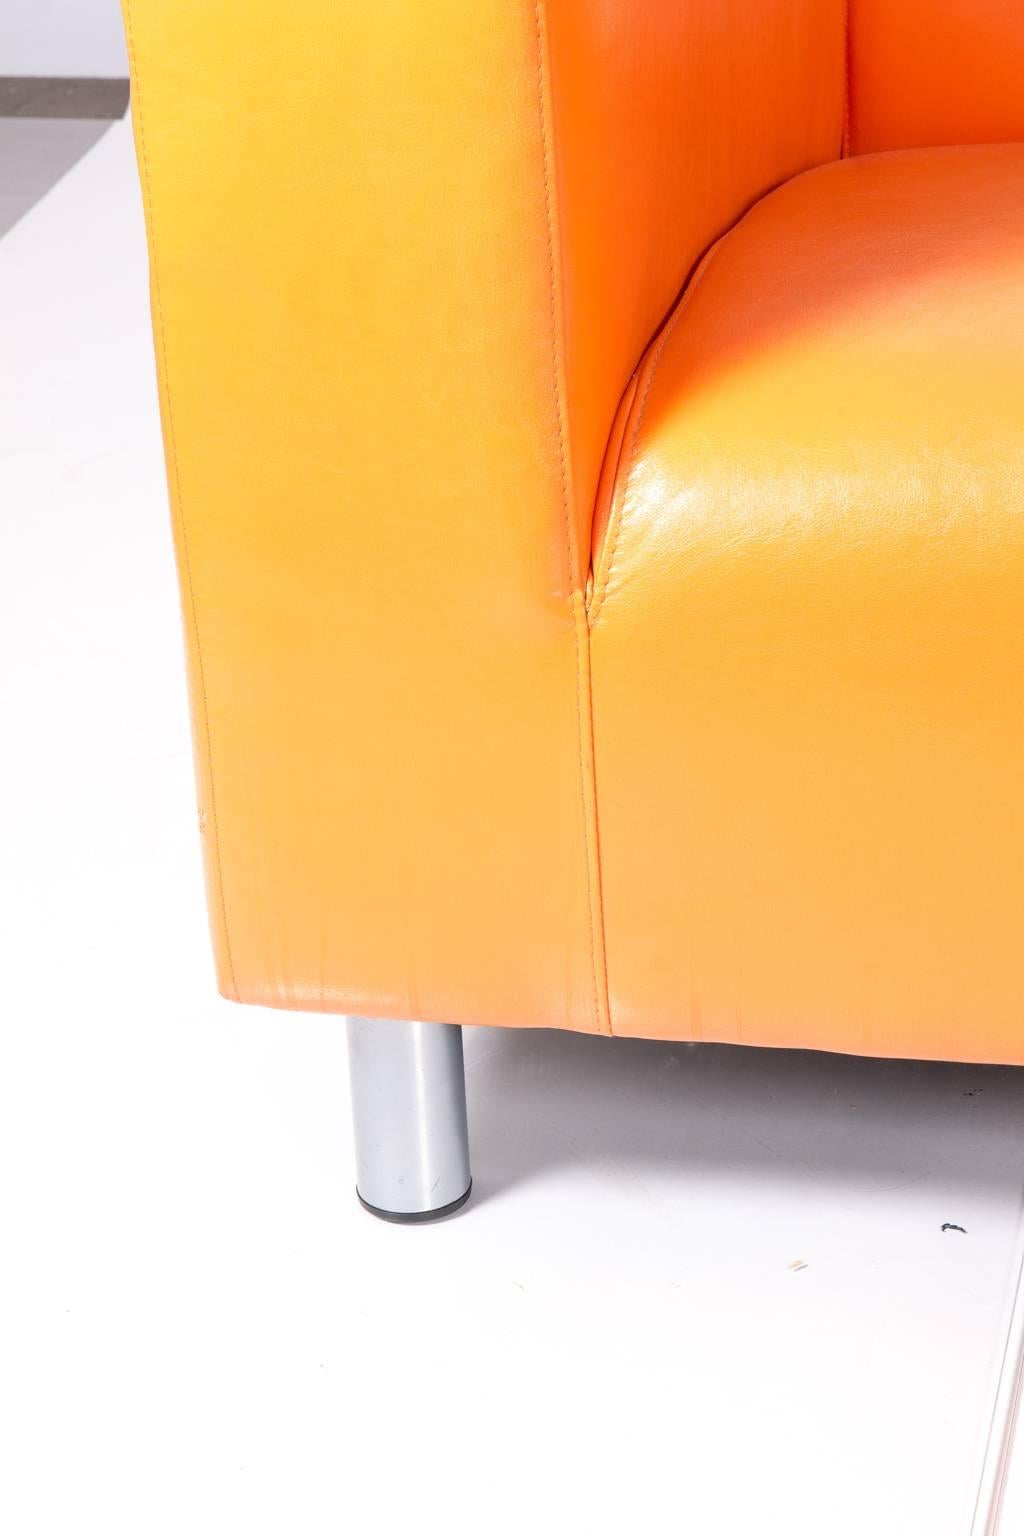 Shockingly orange vintage style sofa on metal legs.